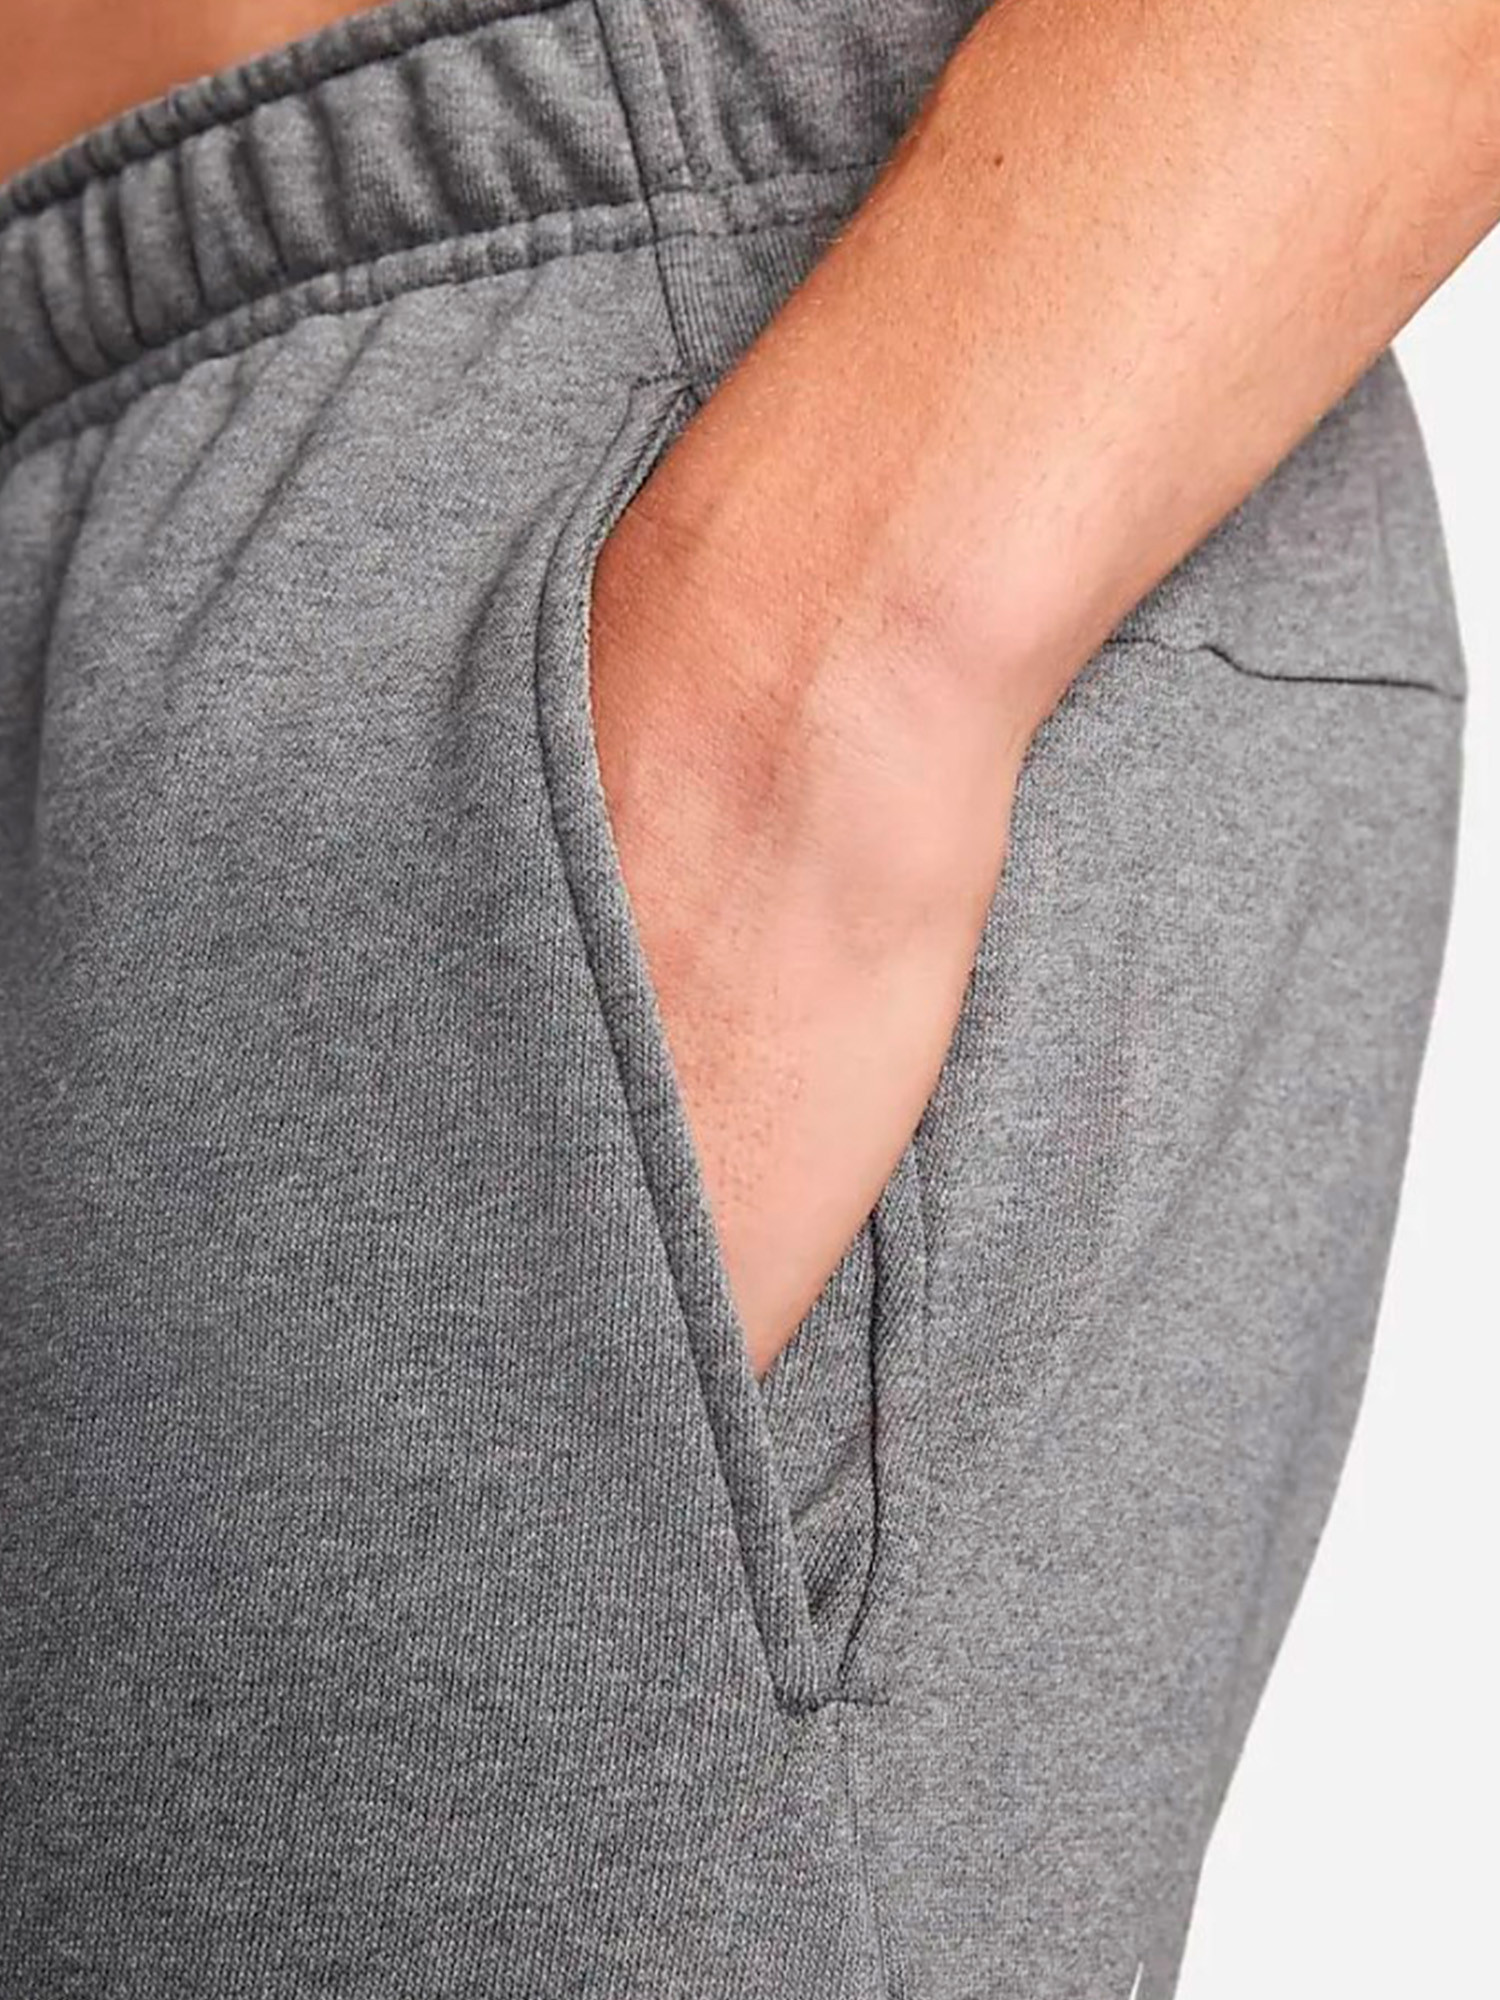 Брюки мужские Nike Dri-Fit Men's Tapered Training Pants